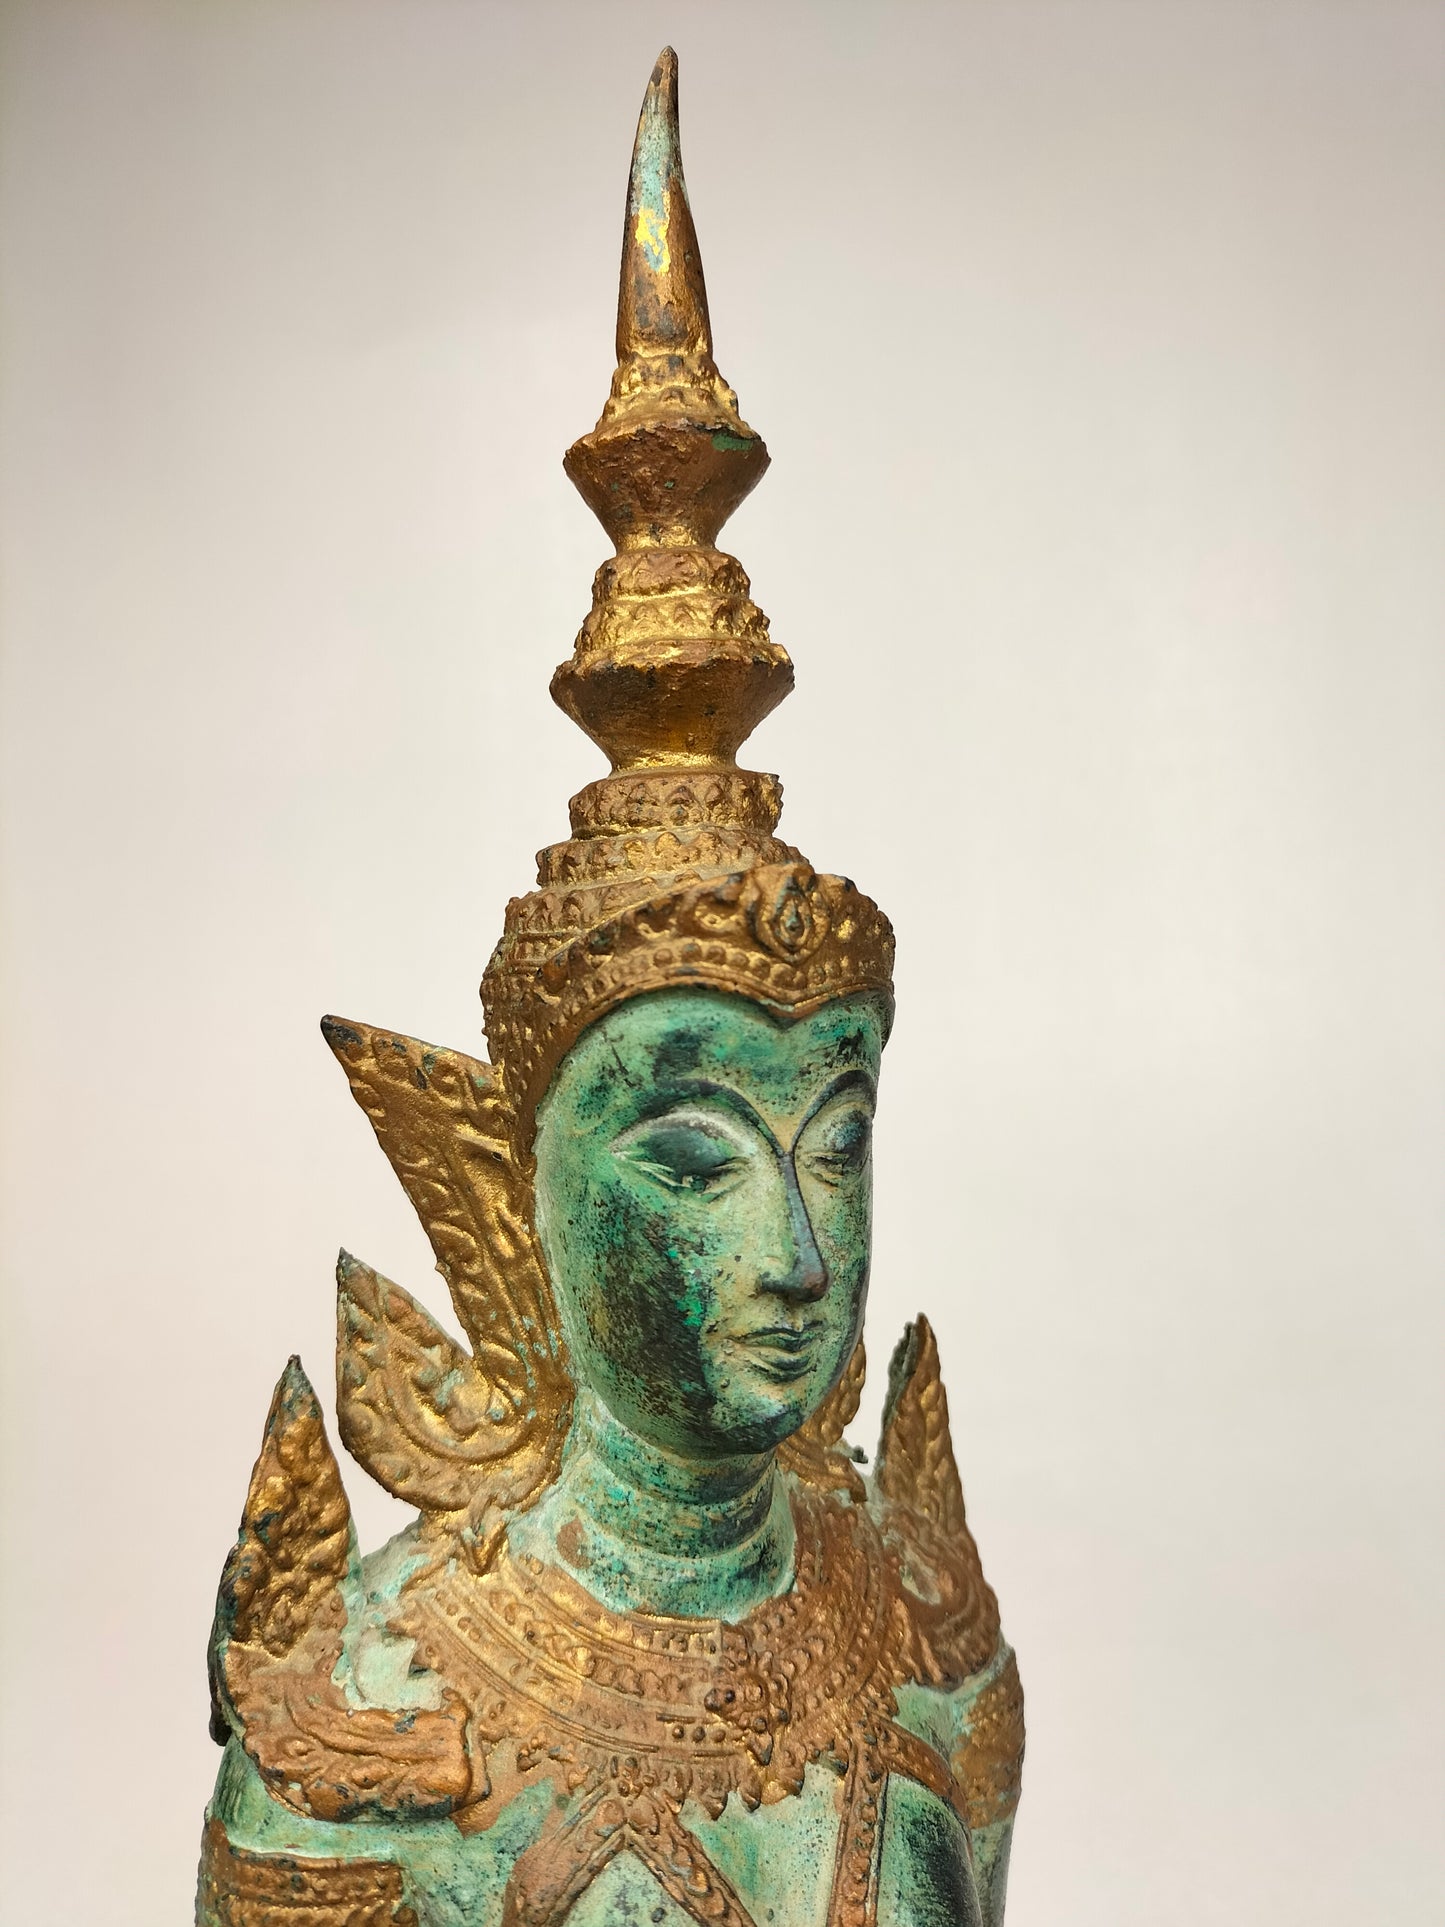 Người canh gác chùa mạ vàng đồng trong tư thế cầu nguyện // Thái Lan - thế kỷ 20